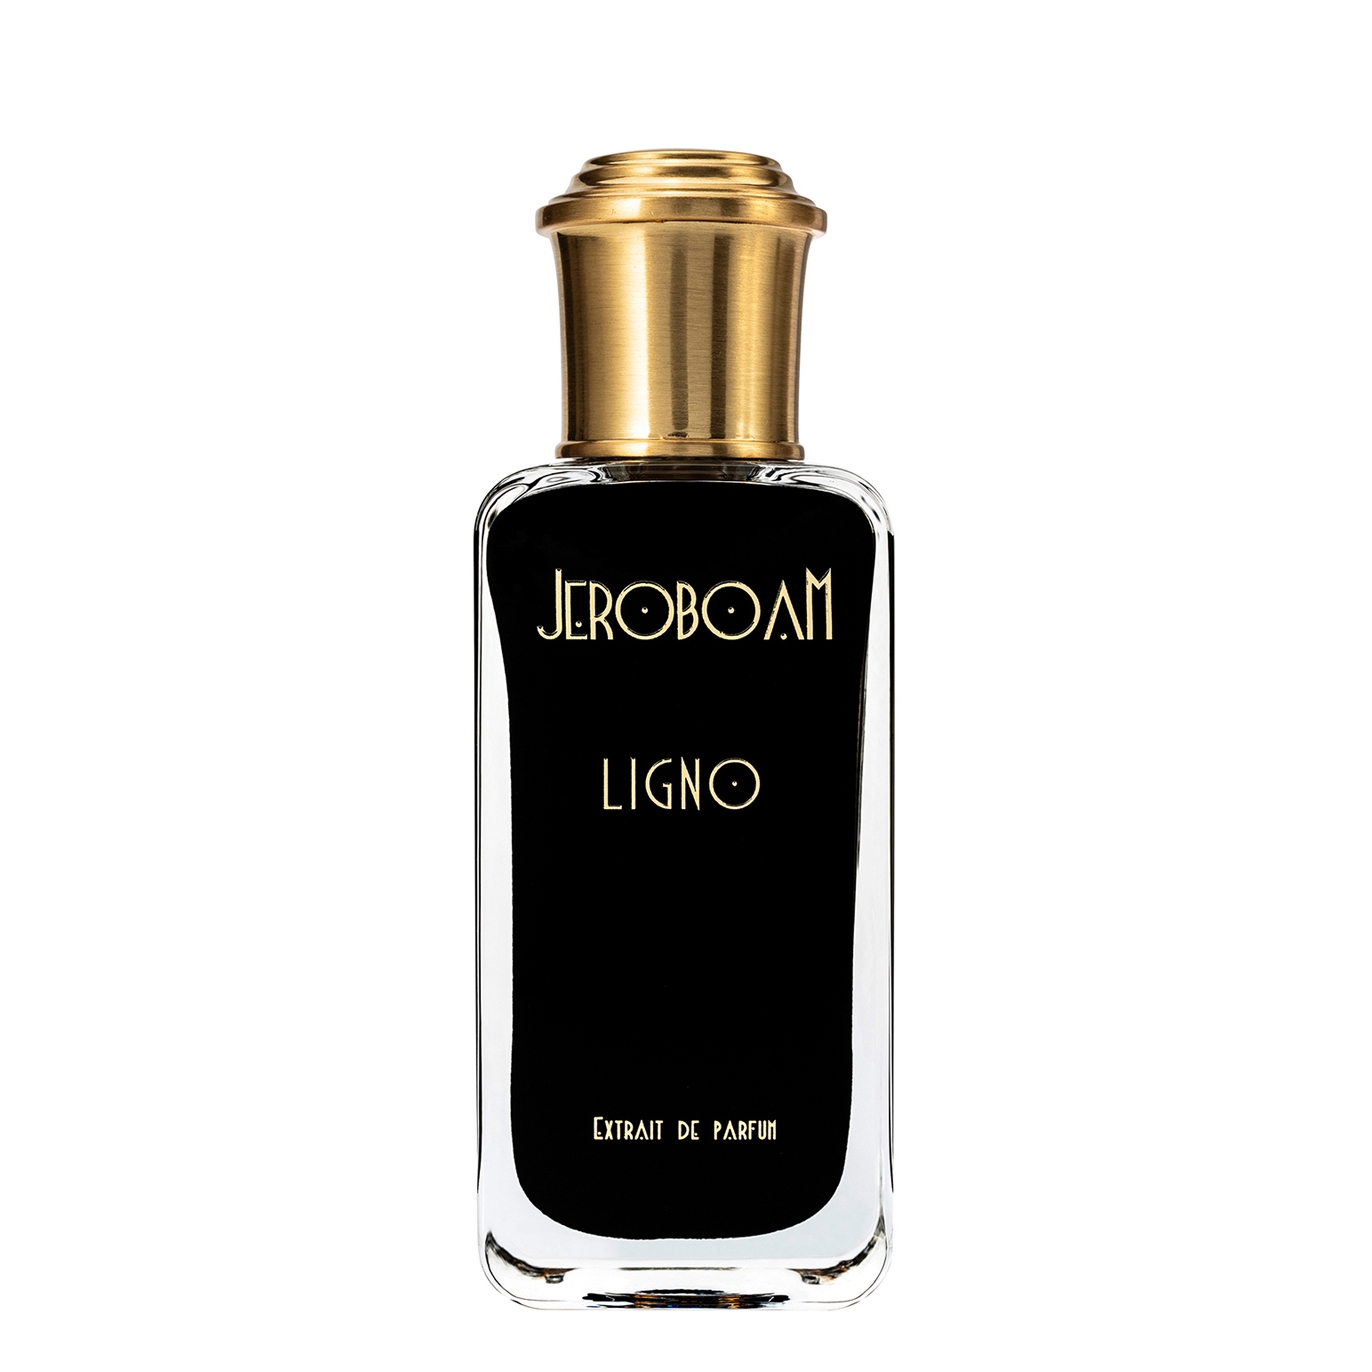 Jeroboam Ligno Extrait De Parfum 30ml